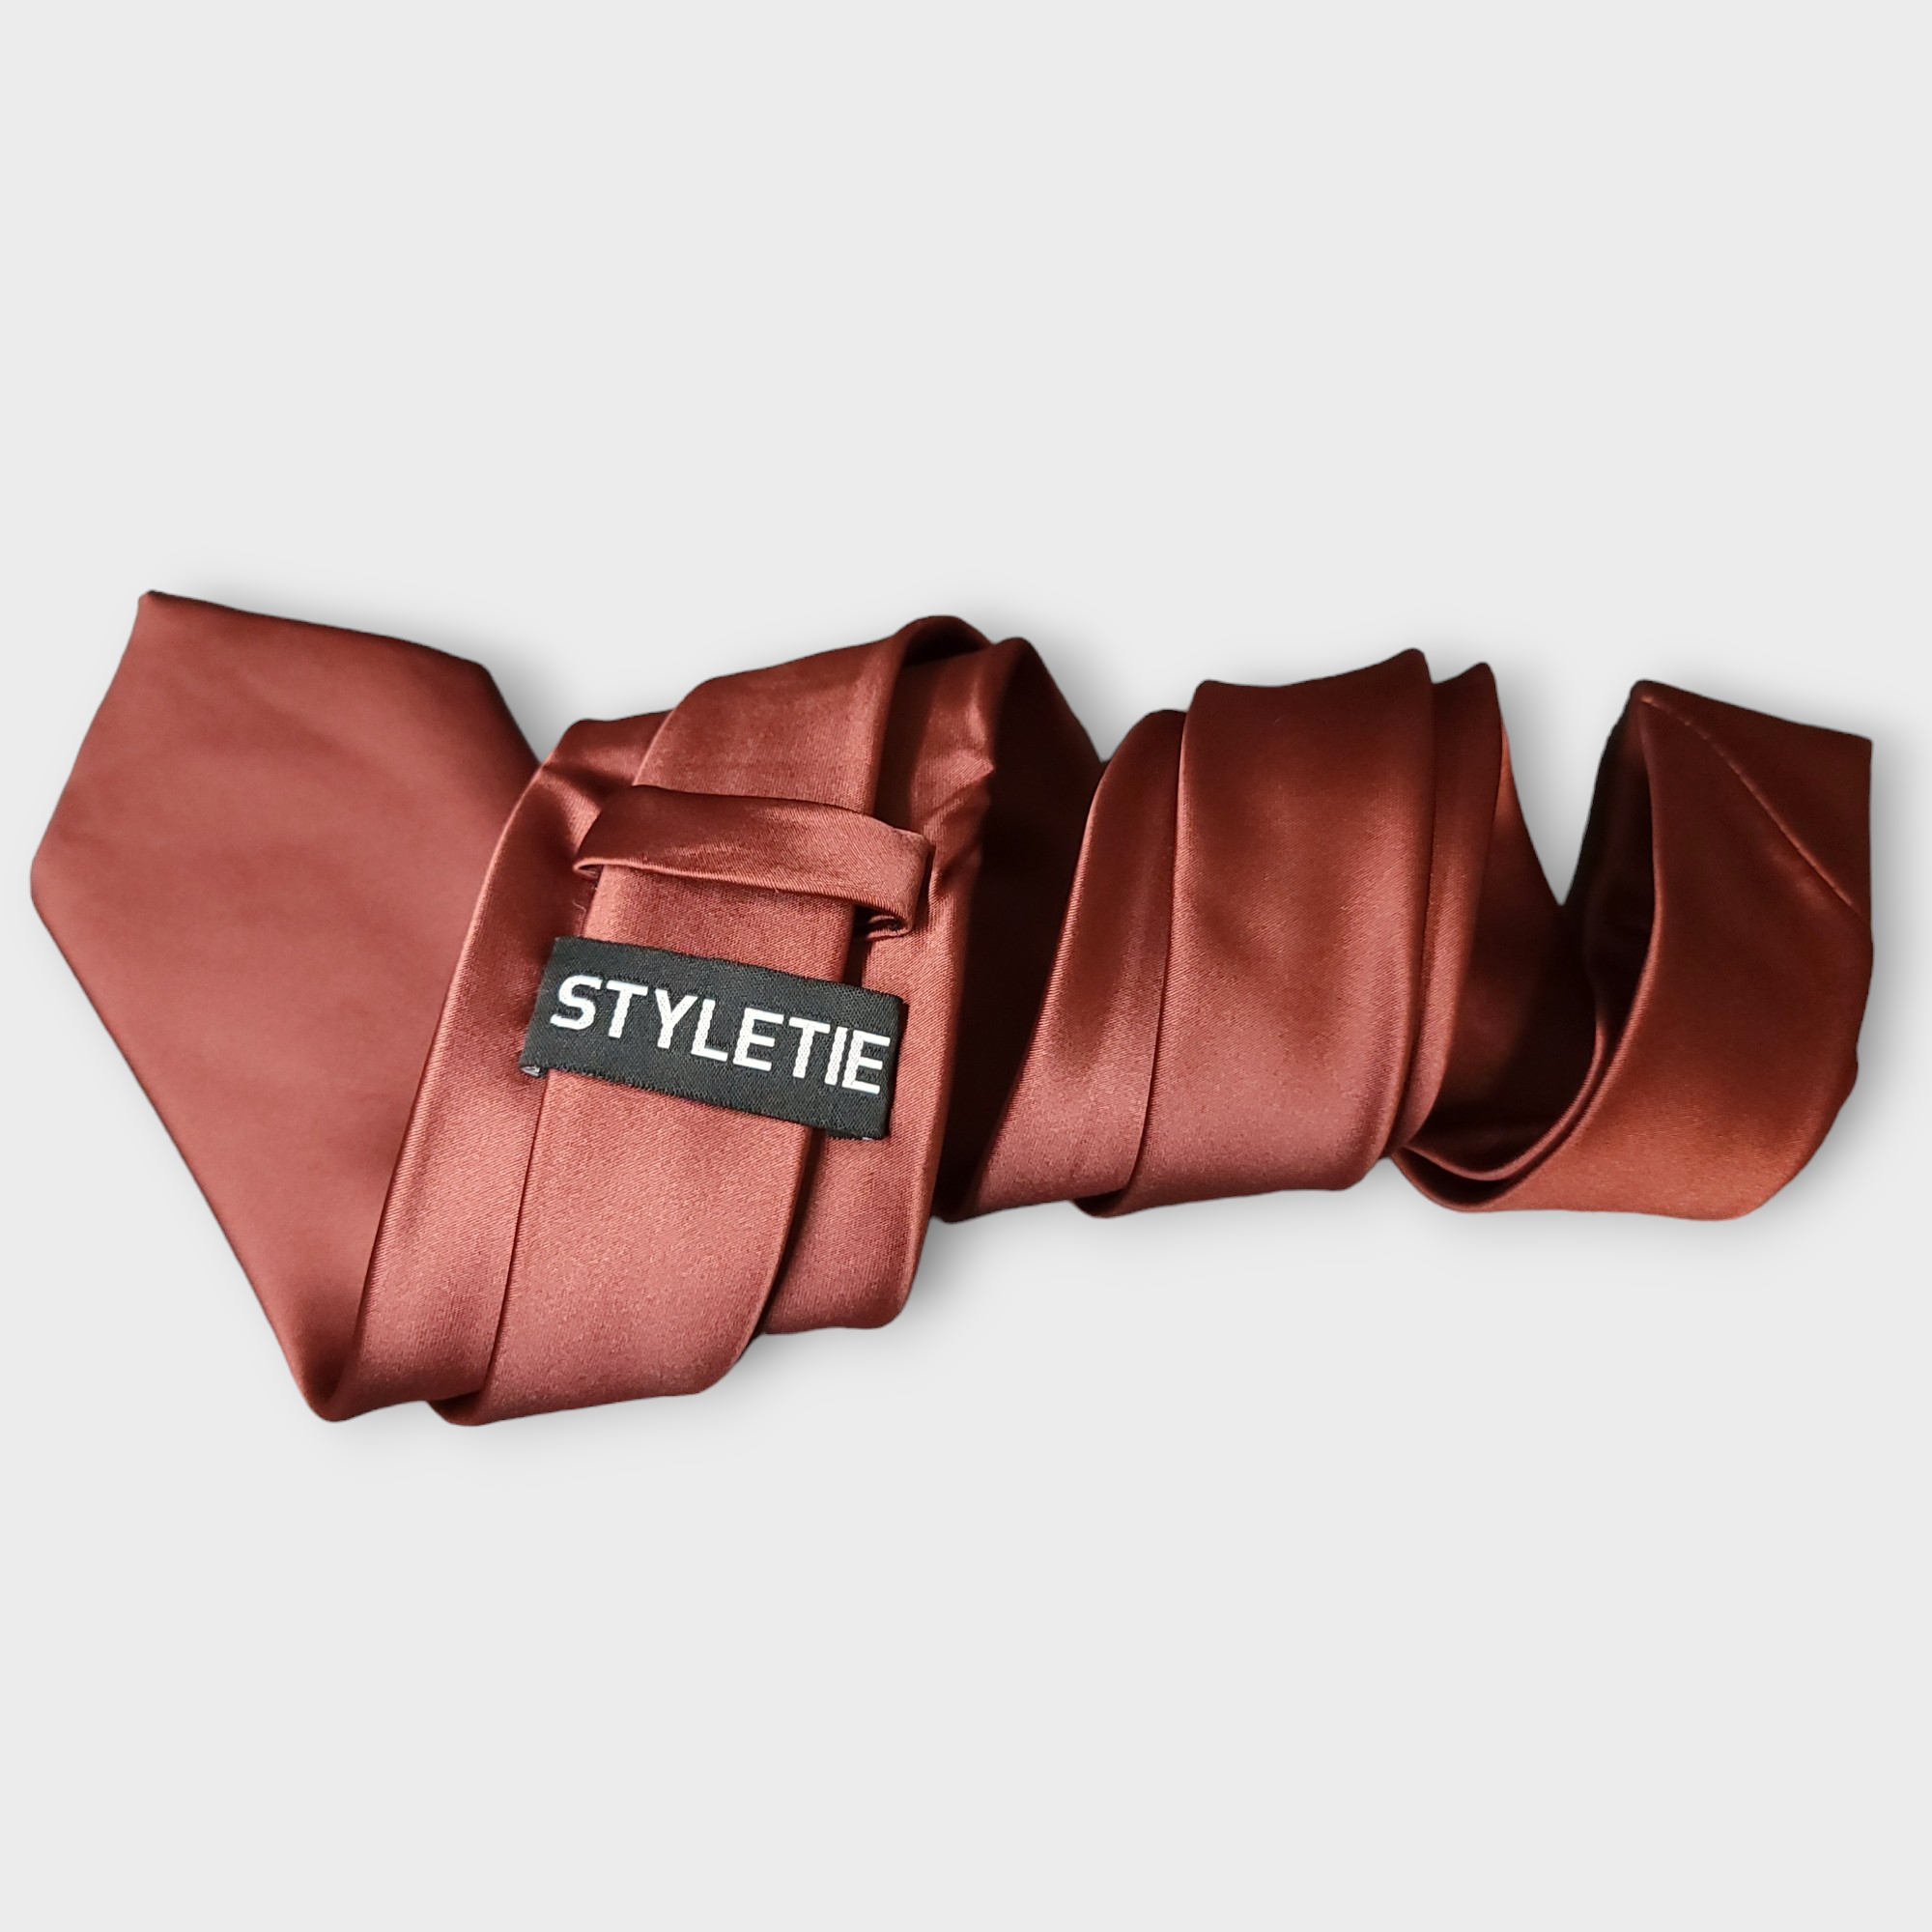 Brick Red Solid Silk Tie Pocket Square Cufflink Set